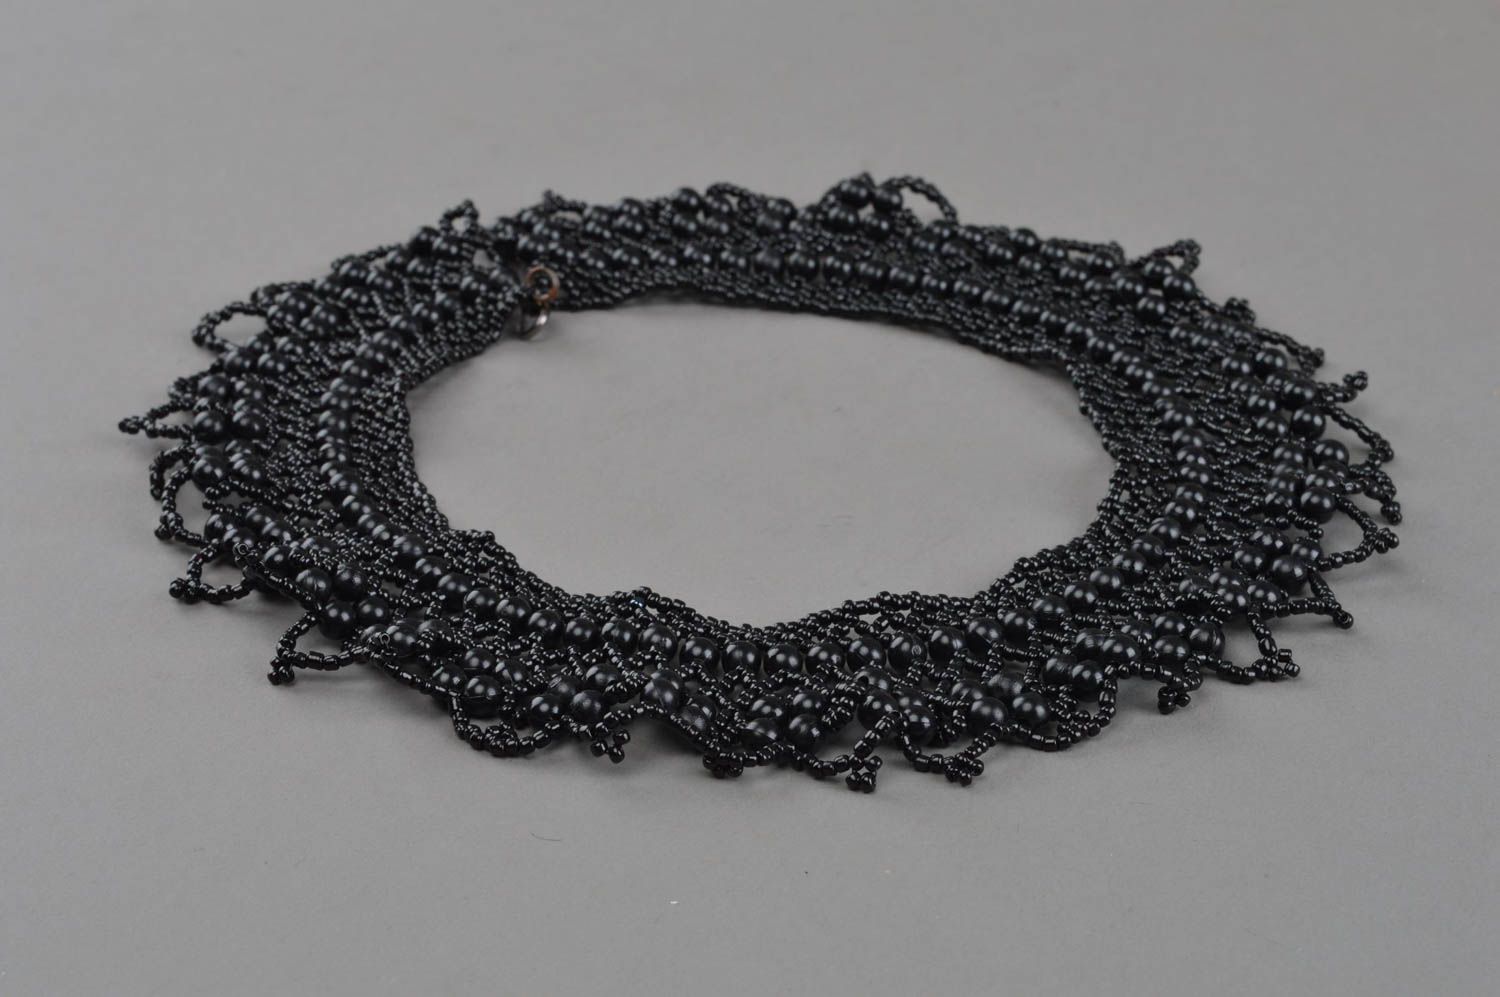 Ожерелье из бисера и бусин ручной работы черного цвета красивое ажурное  фото 2